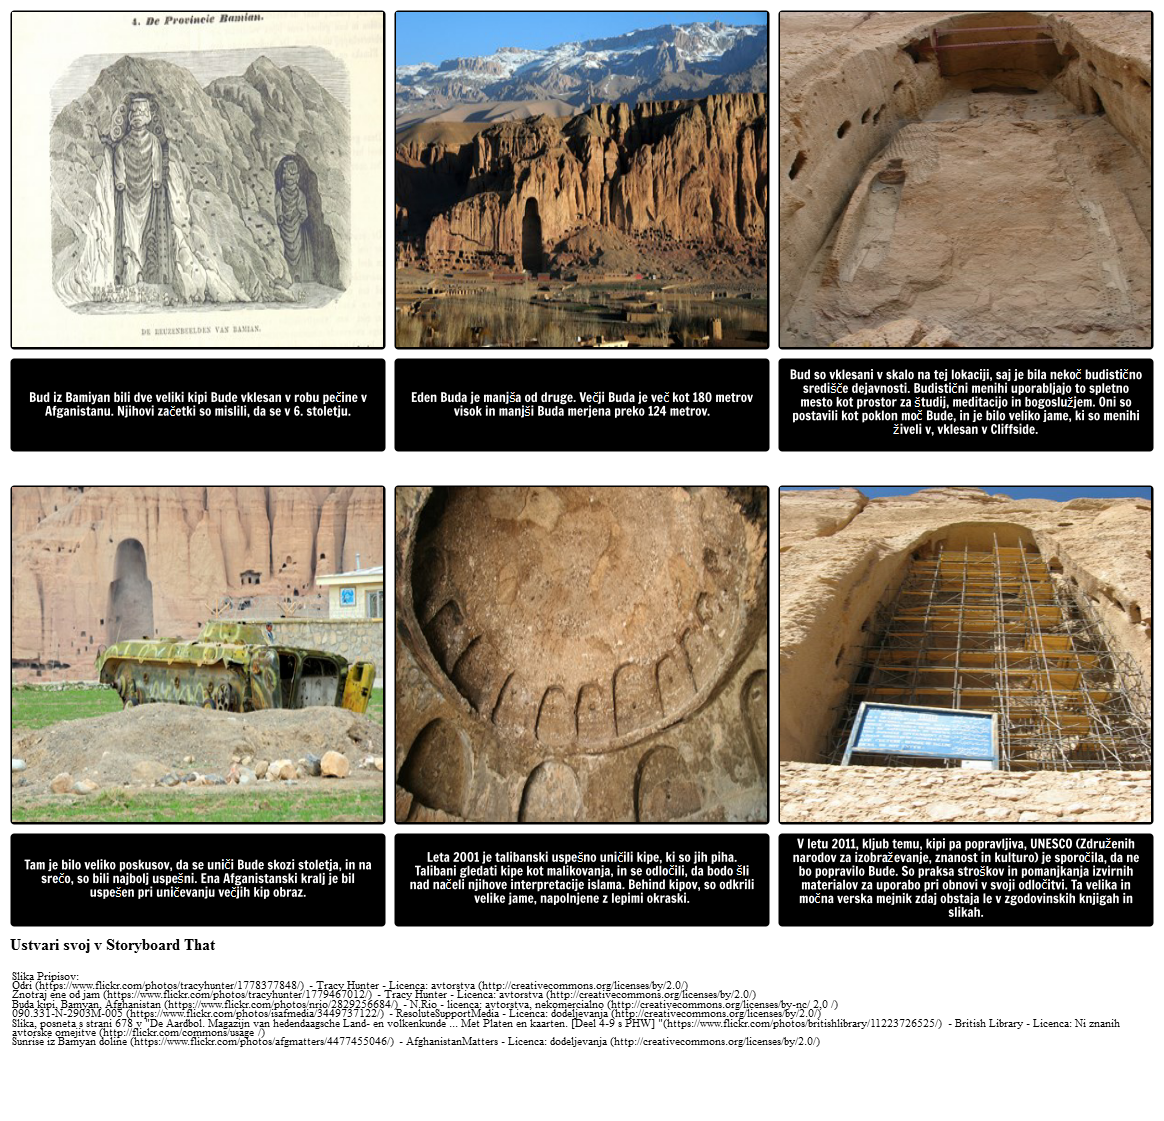 Povezovanje s temo "Ozymandias": The Bamiyan Bud